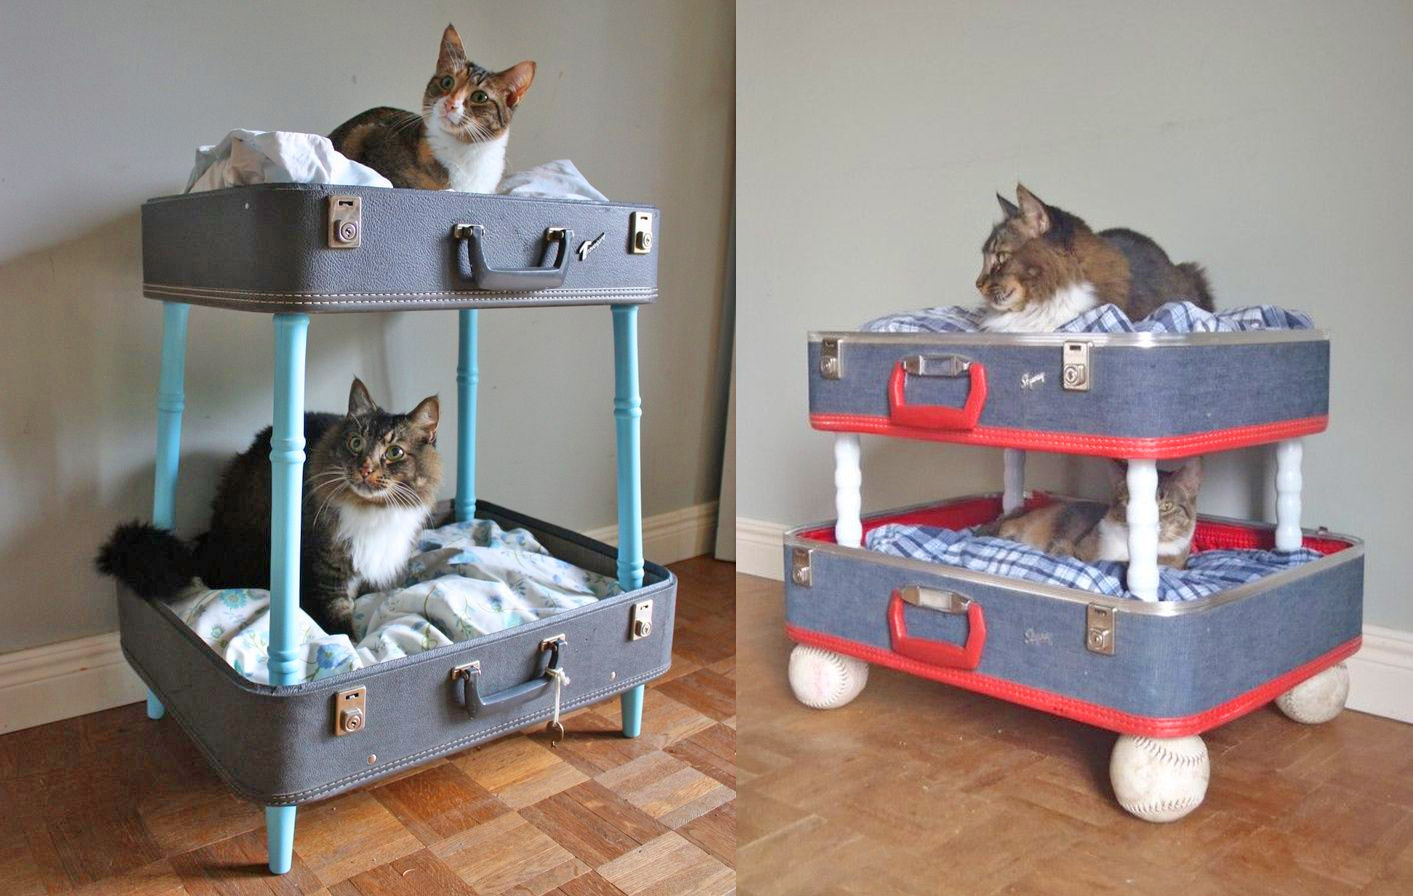 Vintage suitcase cat bunk bed - DIY luggage cat bunk bed